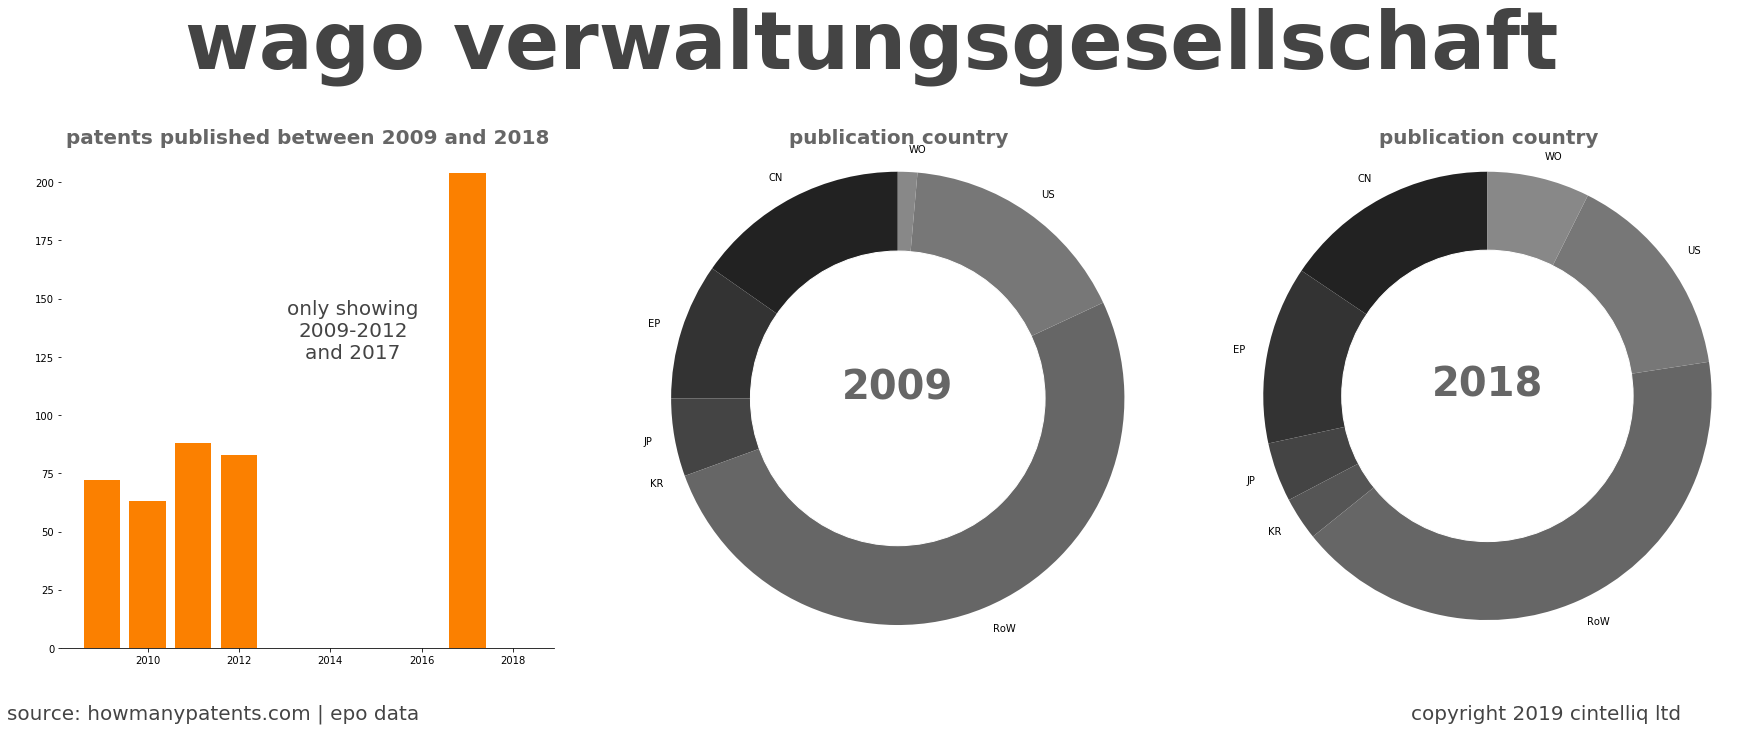 summary of patents for Wago Verwaltungsgesellschaft